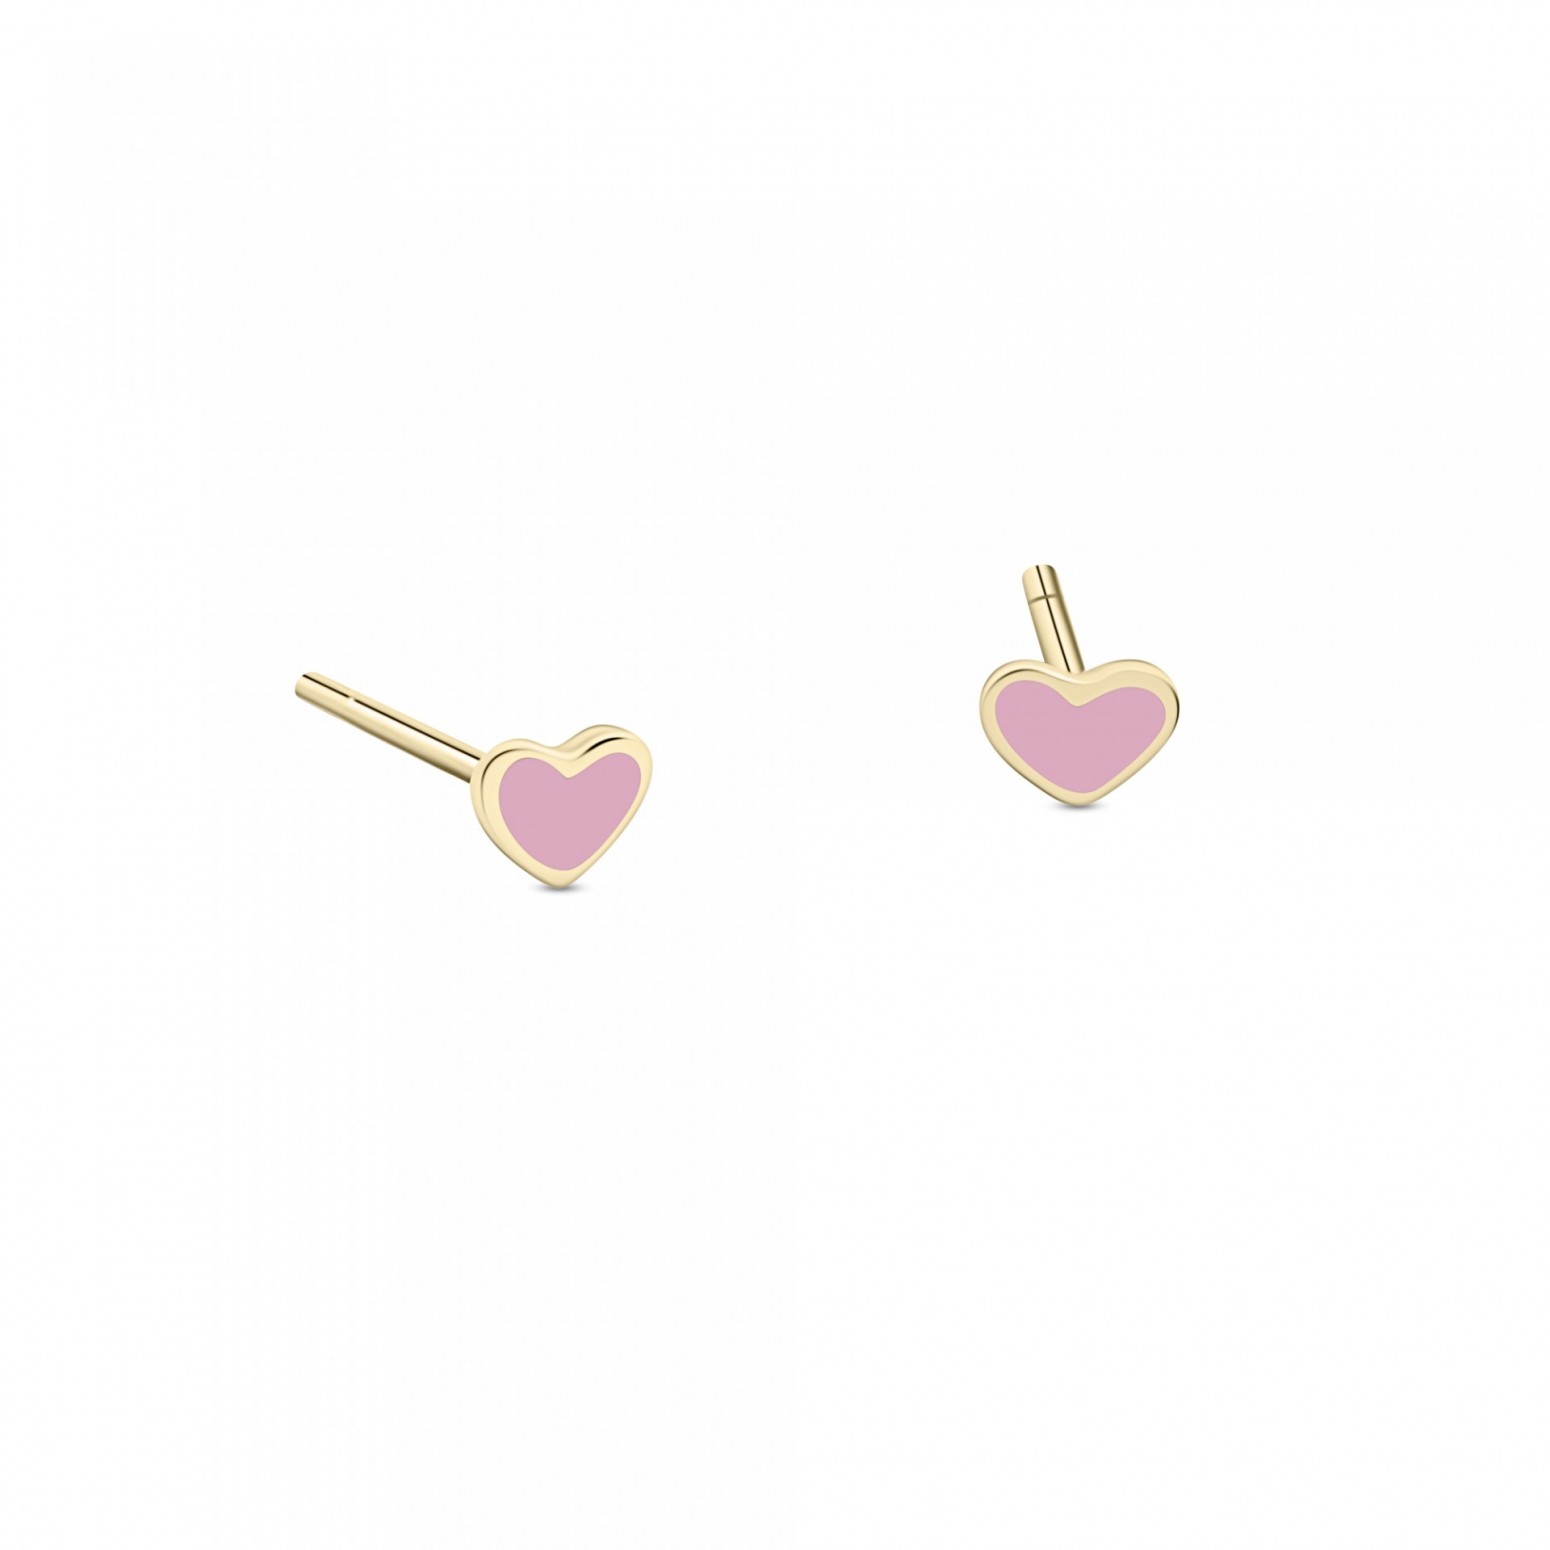 Heart baby earrings K9 gold with enamel, ps0151 EARRINGS Κοσμηματα - chrilia.gr